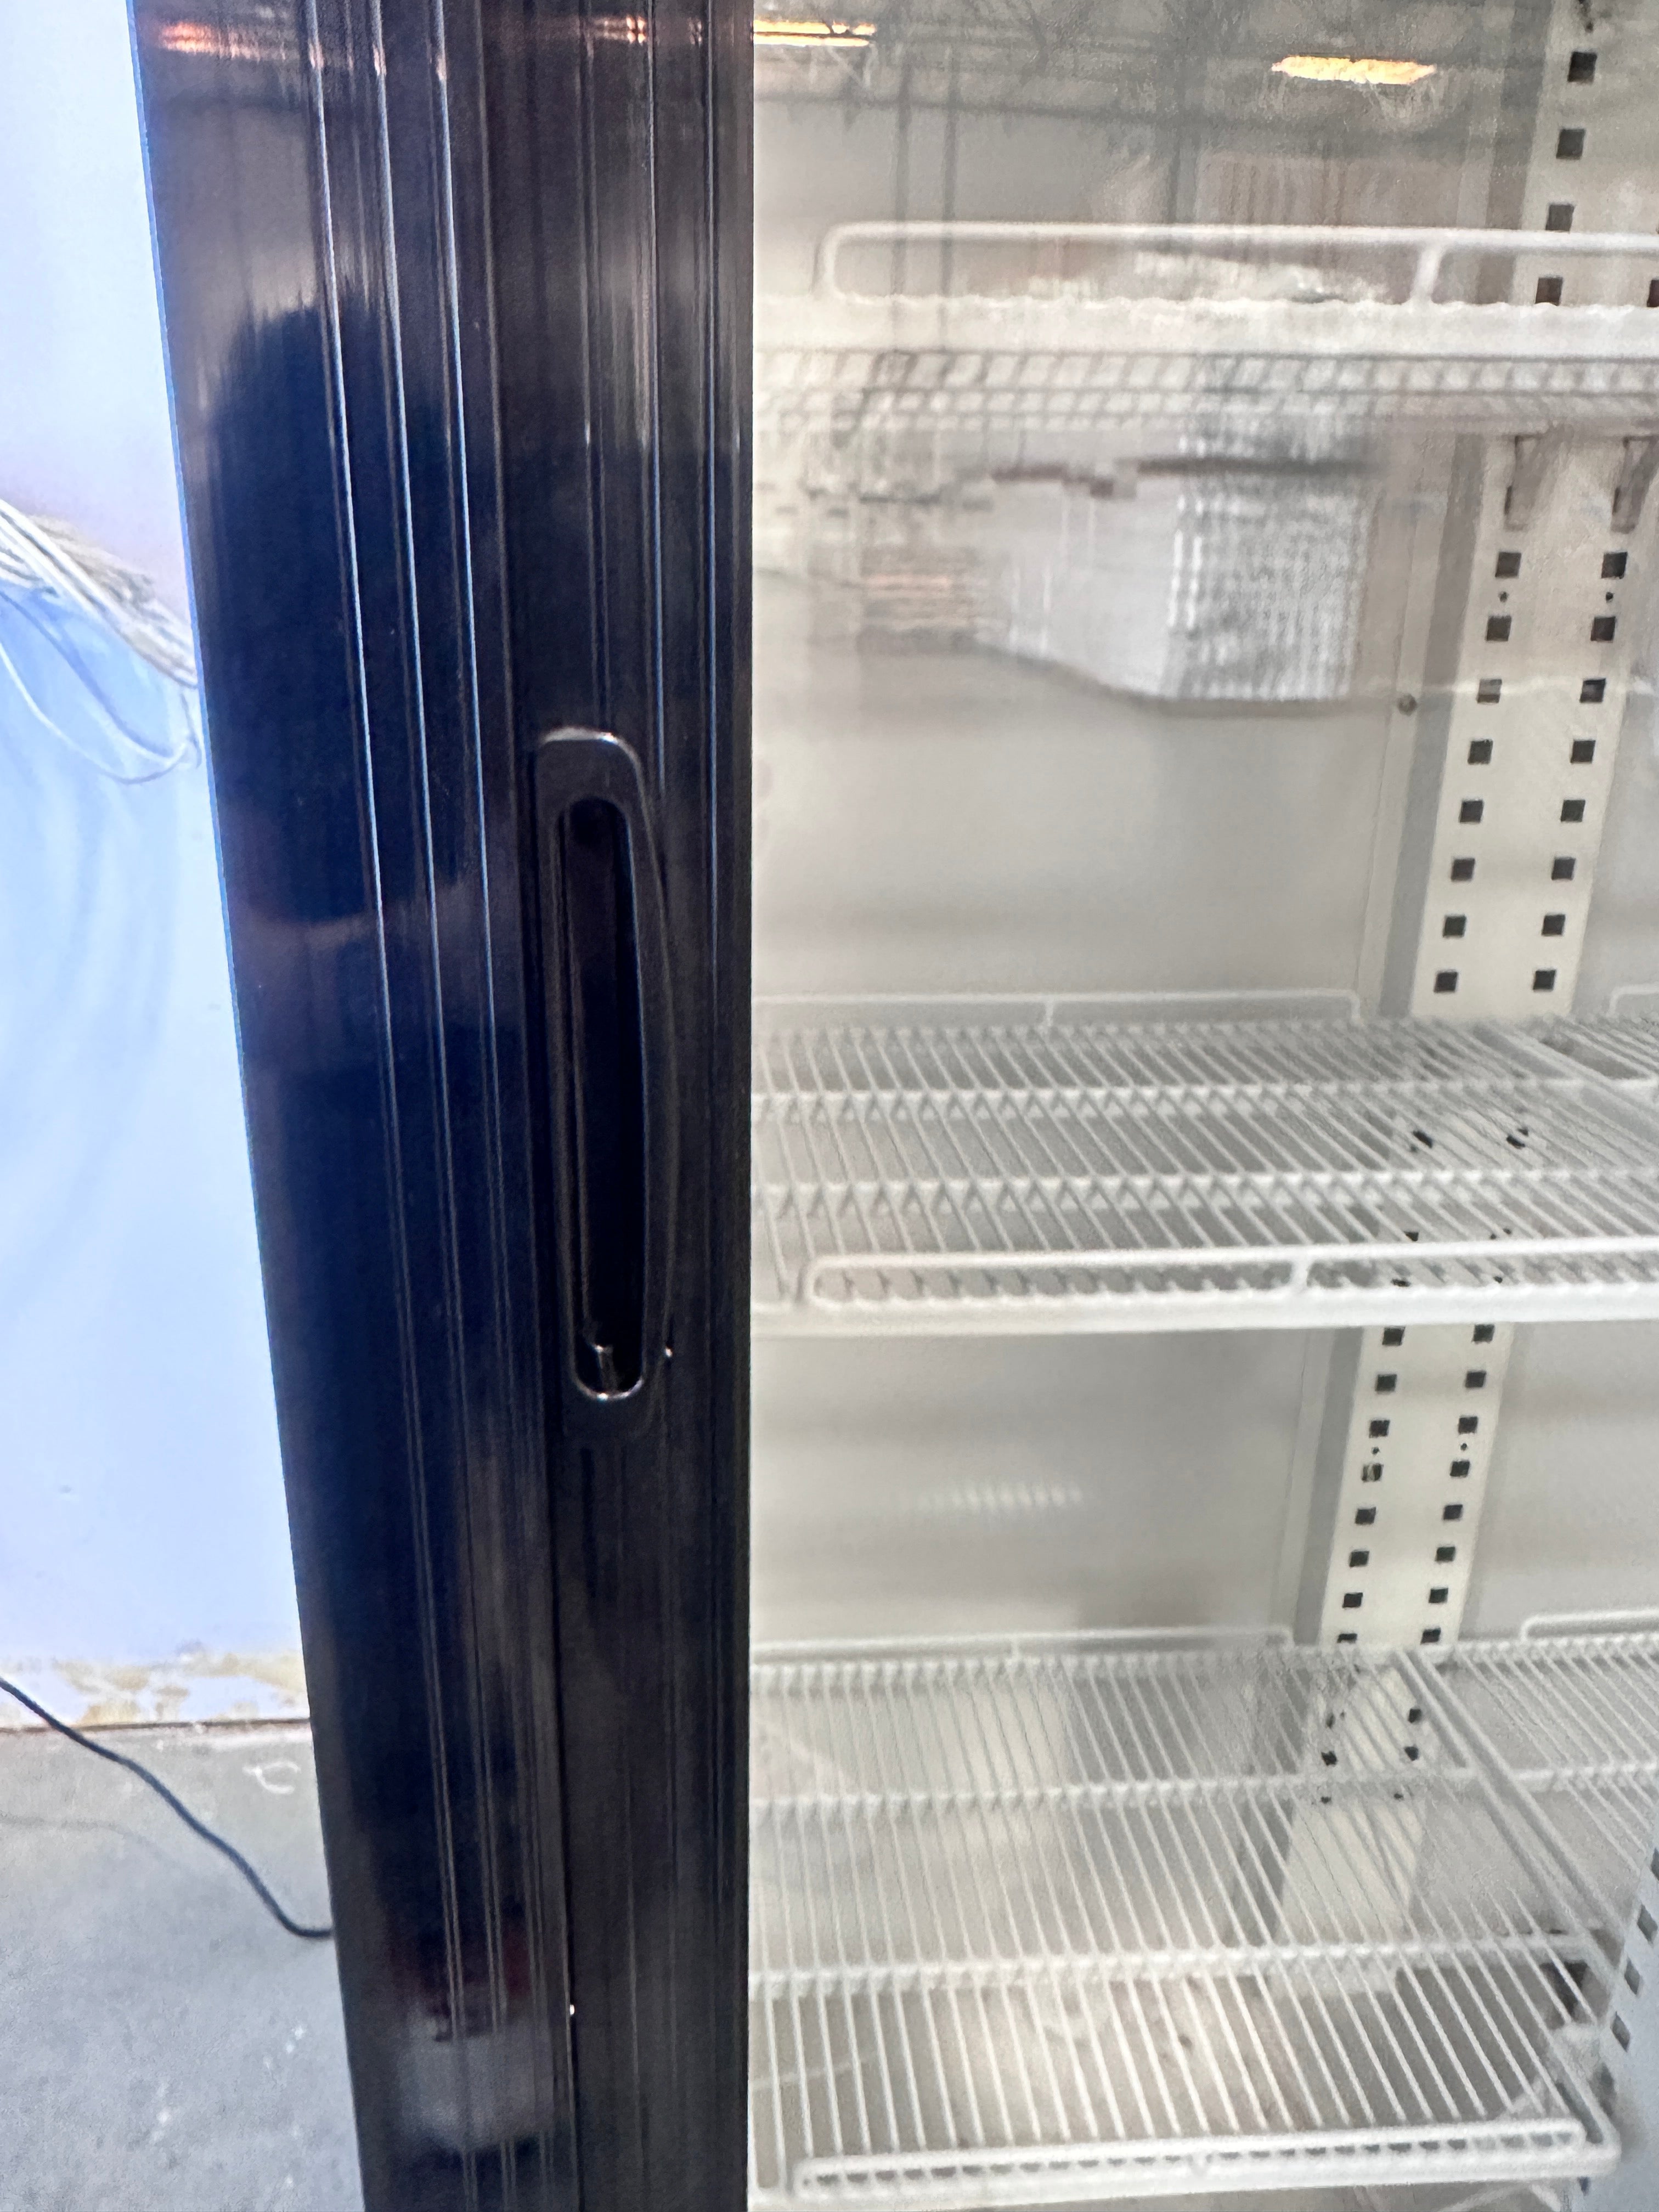 SDGRX(S) ETL, ETL Sanitation 36 inch Two section sliding glass door merchandiser refrigerator